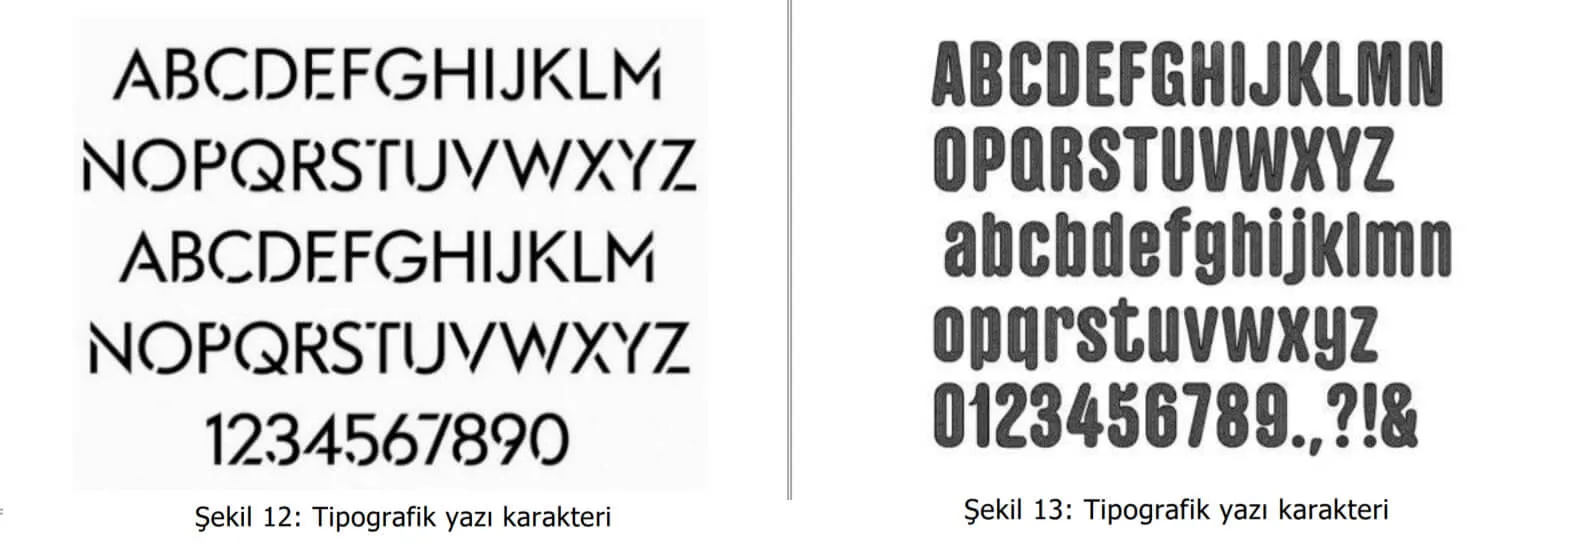 tipografik yazı karakter örnekleri-aksaray patent